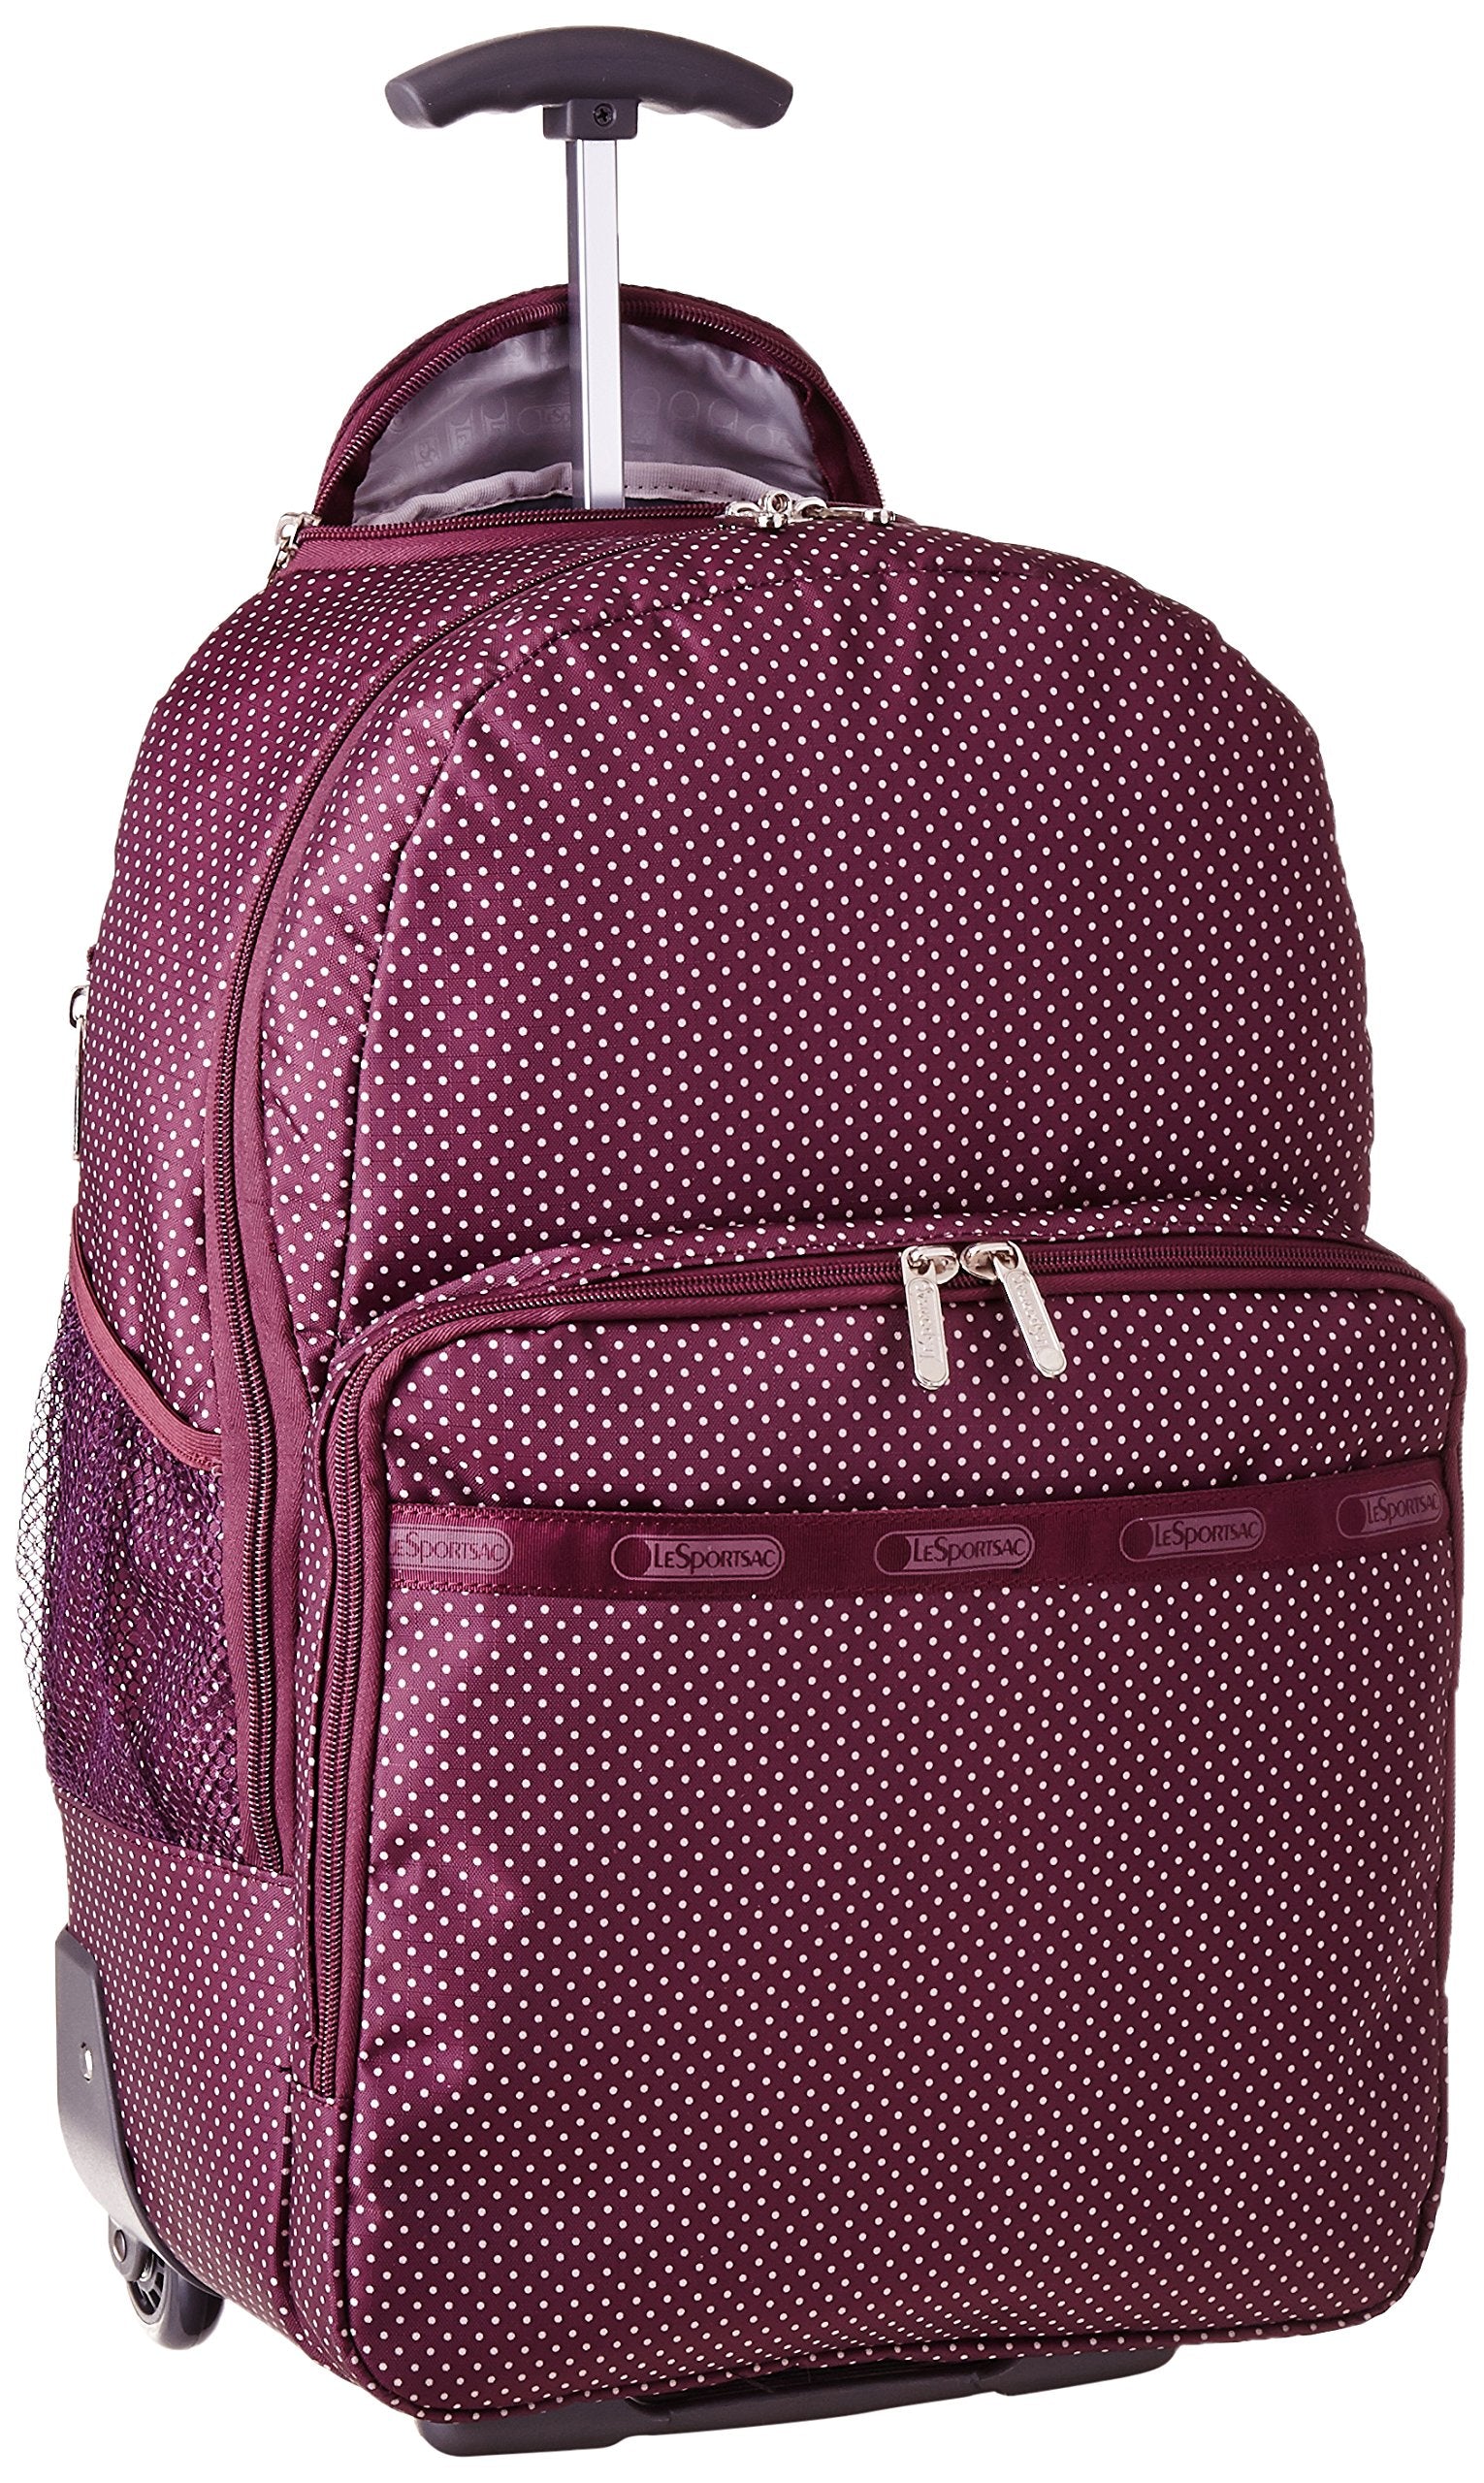 Bags, backpacks, trolley bags: online shop